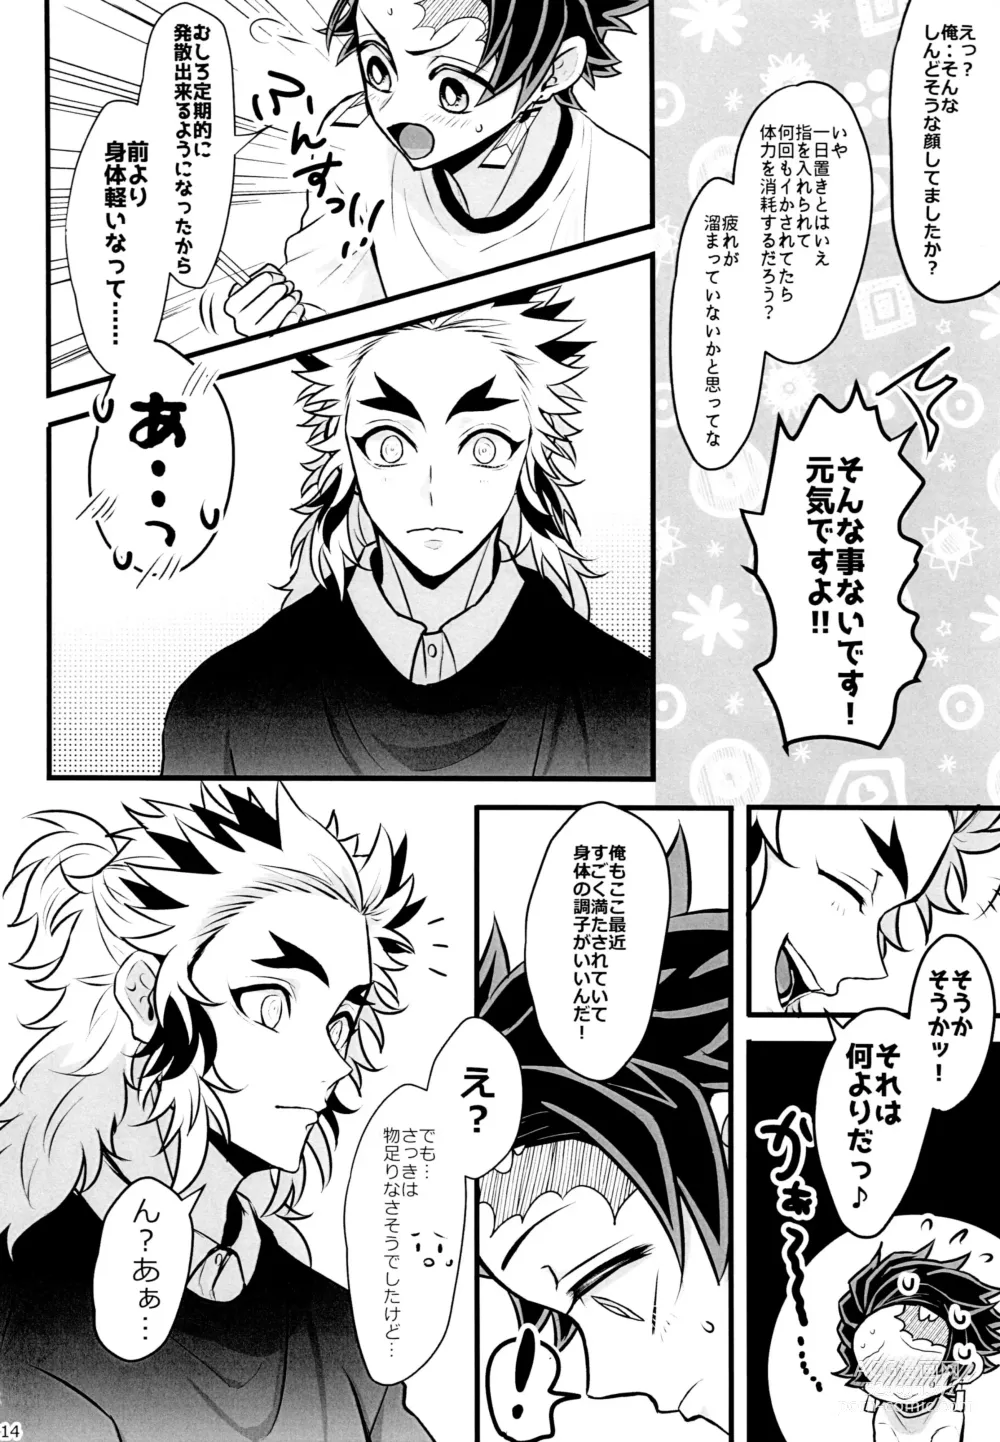 Page 14 of doujinshi Ore Seitsuu